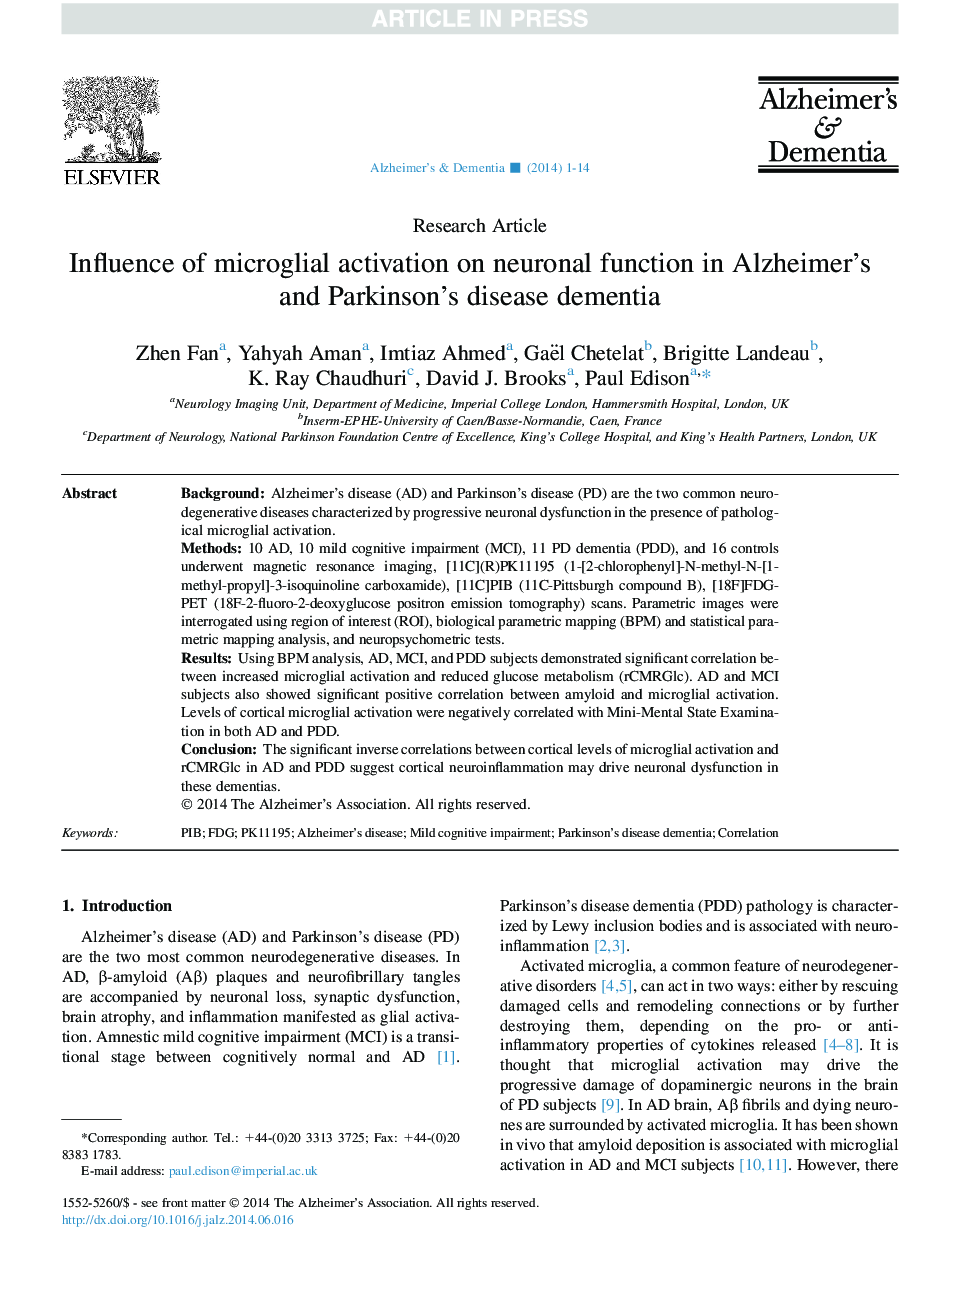 تأثیر فعال سازی میکروگلایلیس بر عملکرد عضلانی در بیماری آلزایمر و بیماری پارکینسون دمانس 